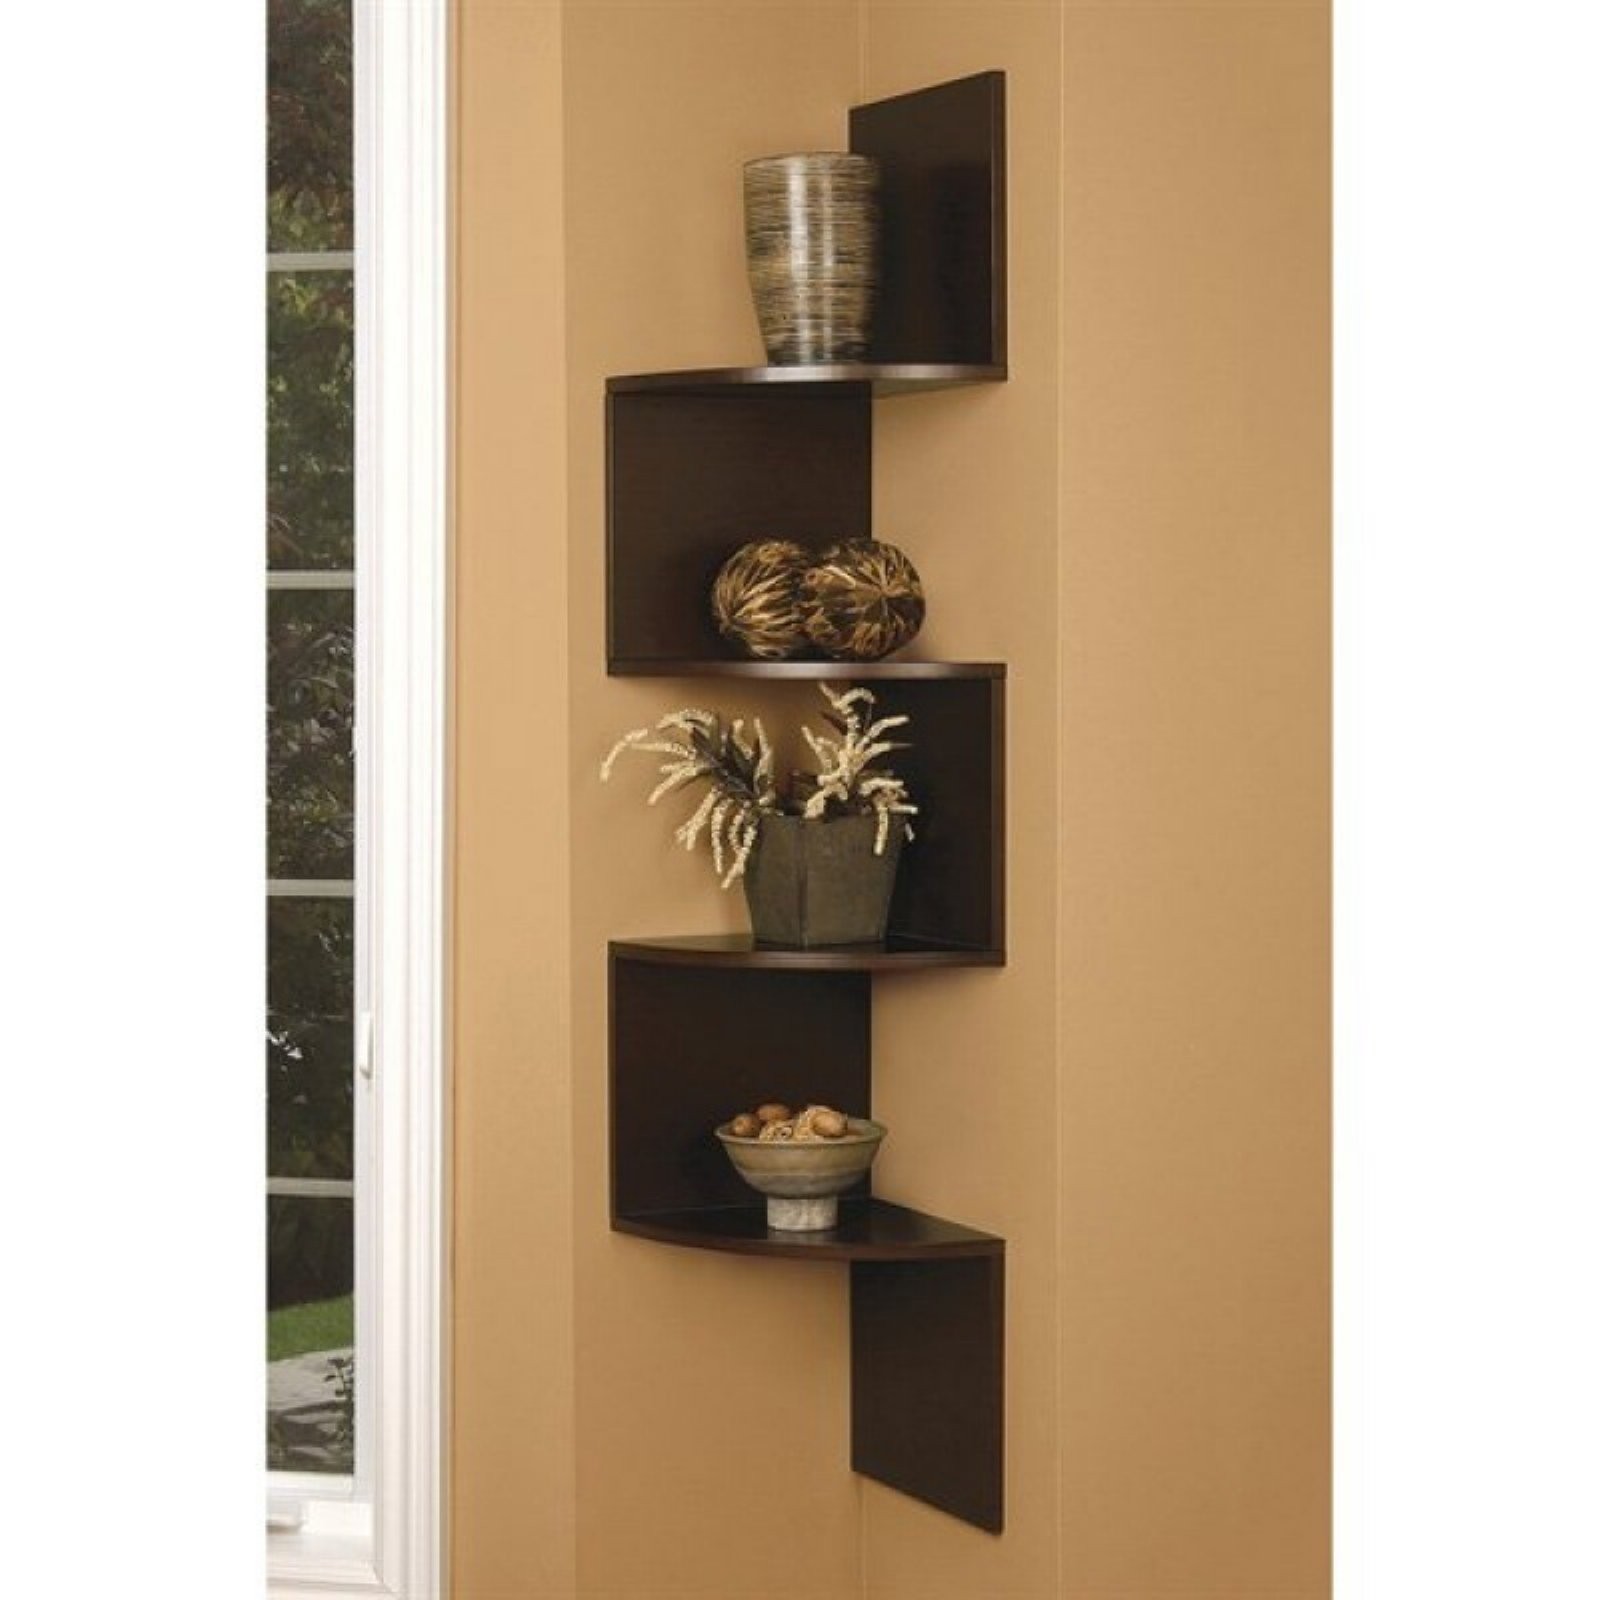 White wall mounted shelf unit